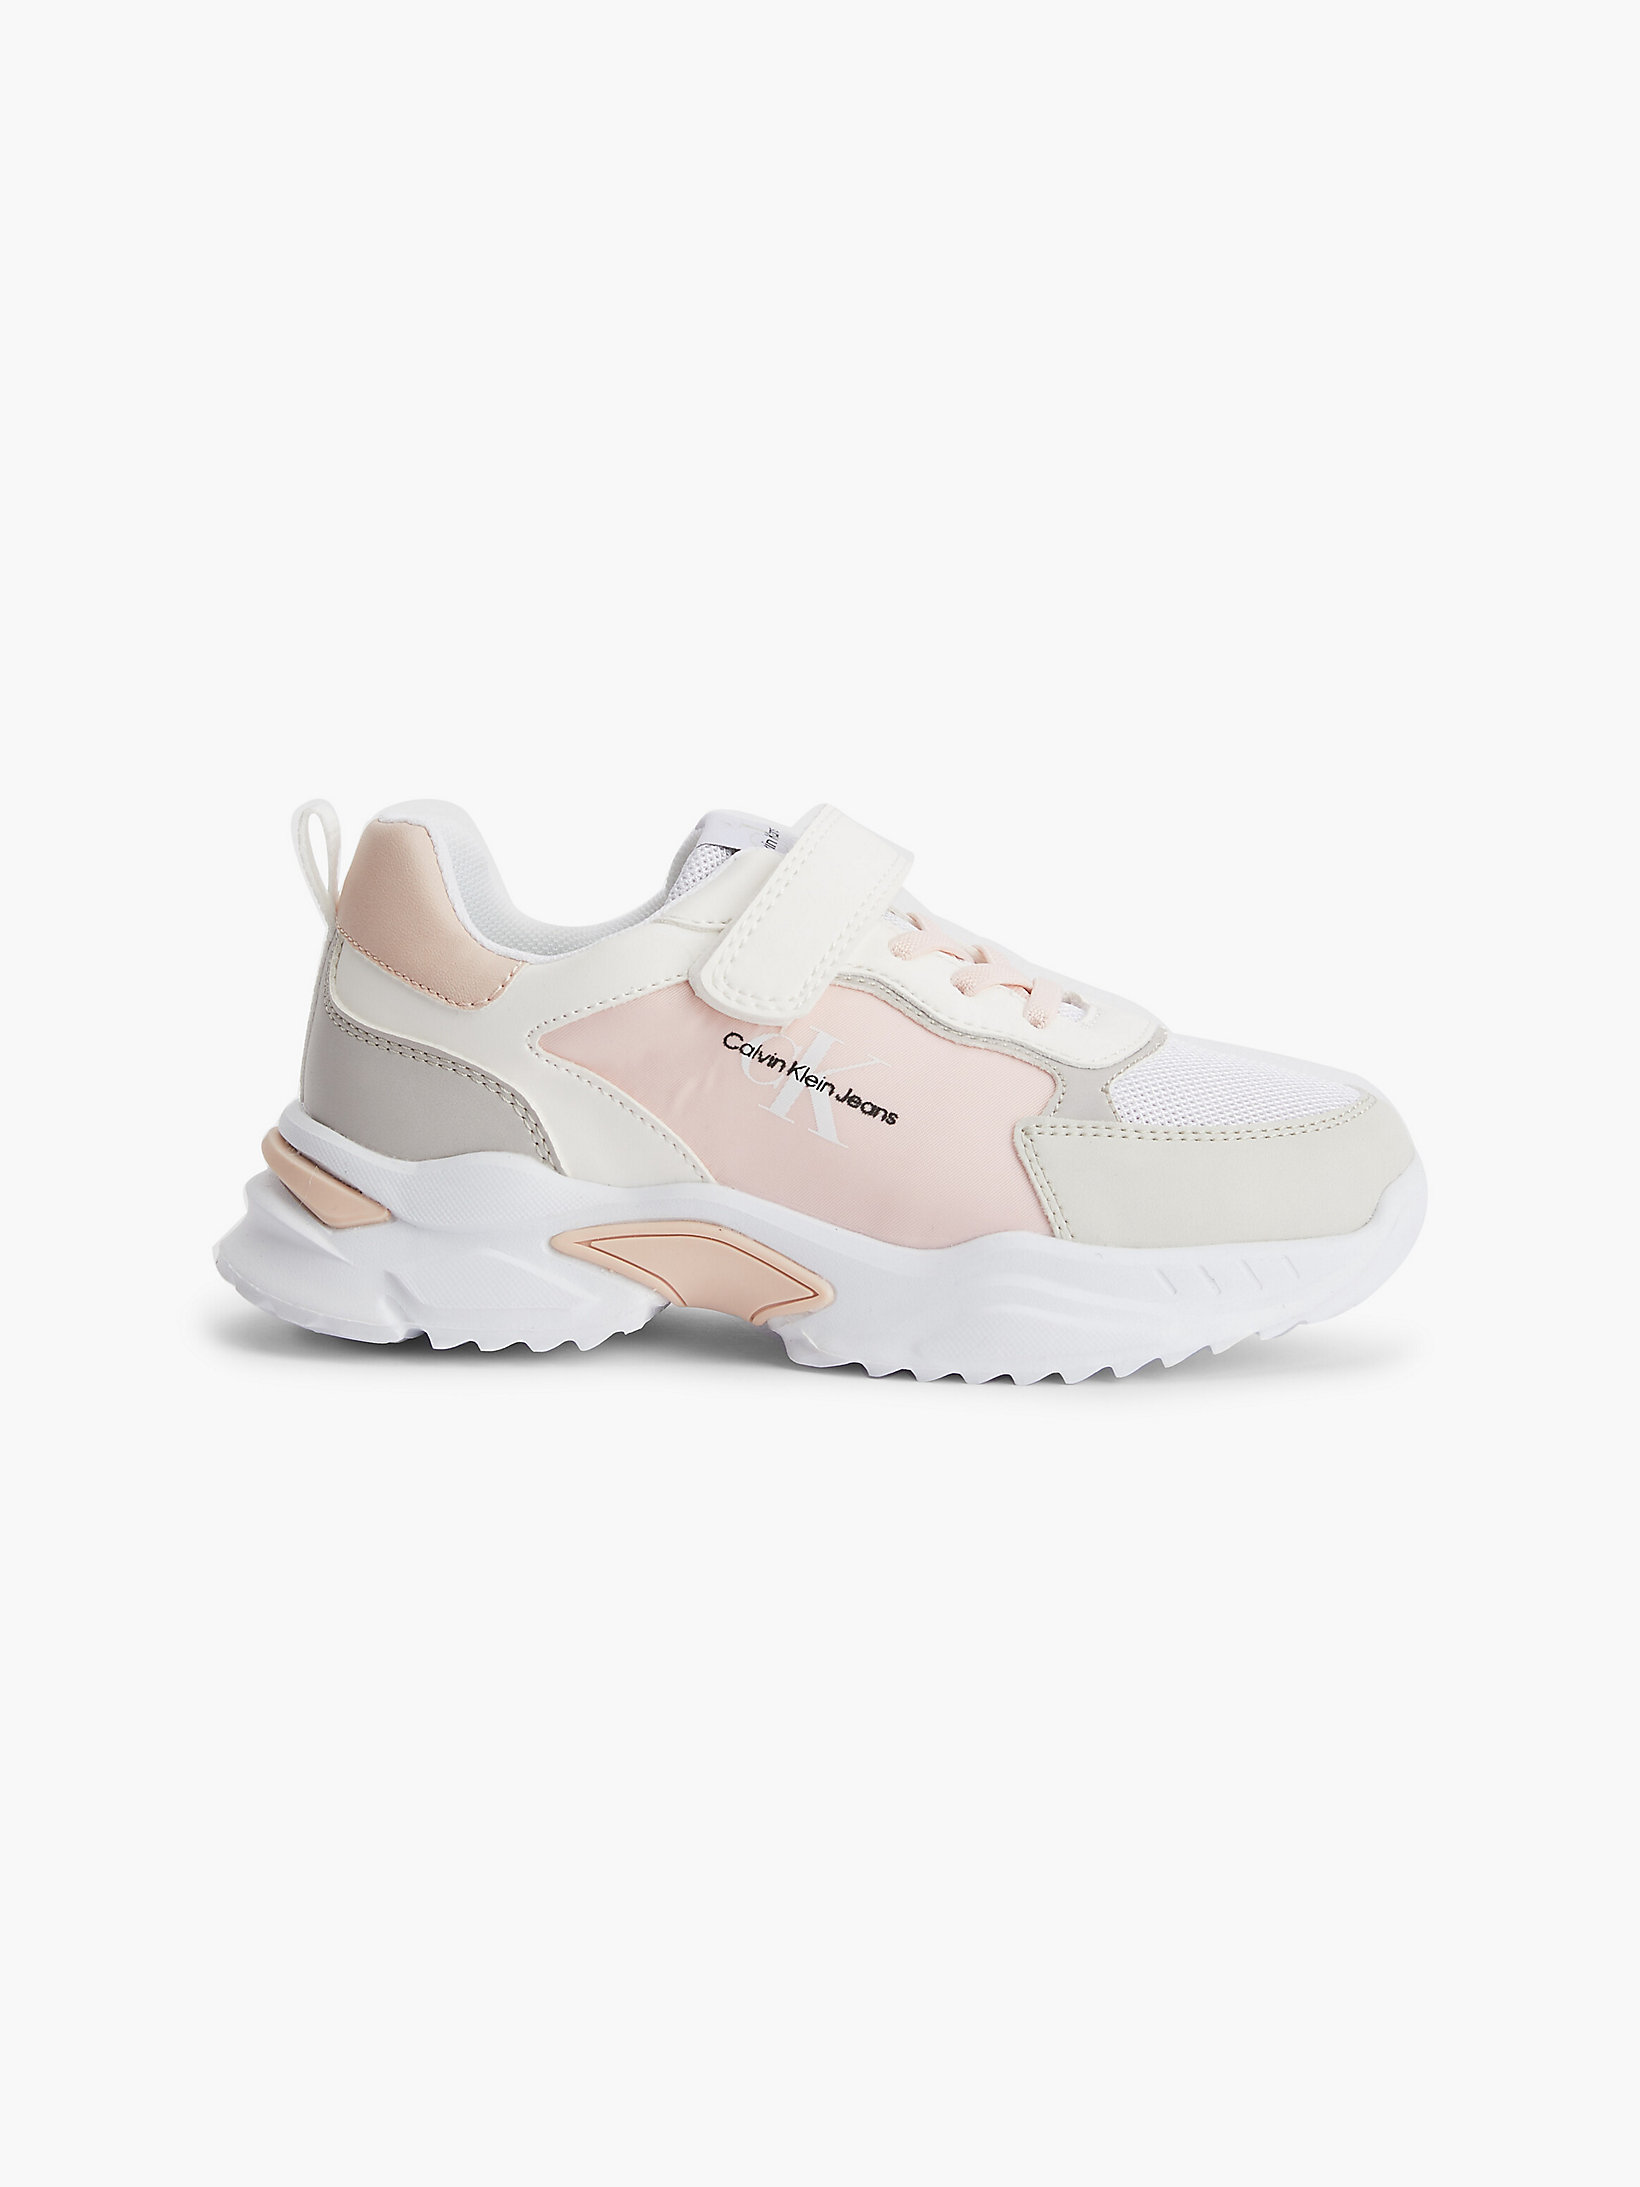 Beige/white/pink > Sneakers > undefined Maedchen - Calvin Klein